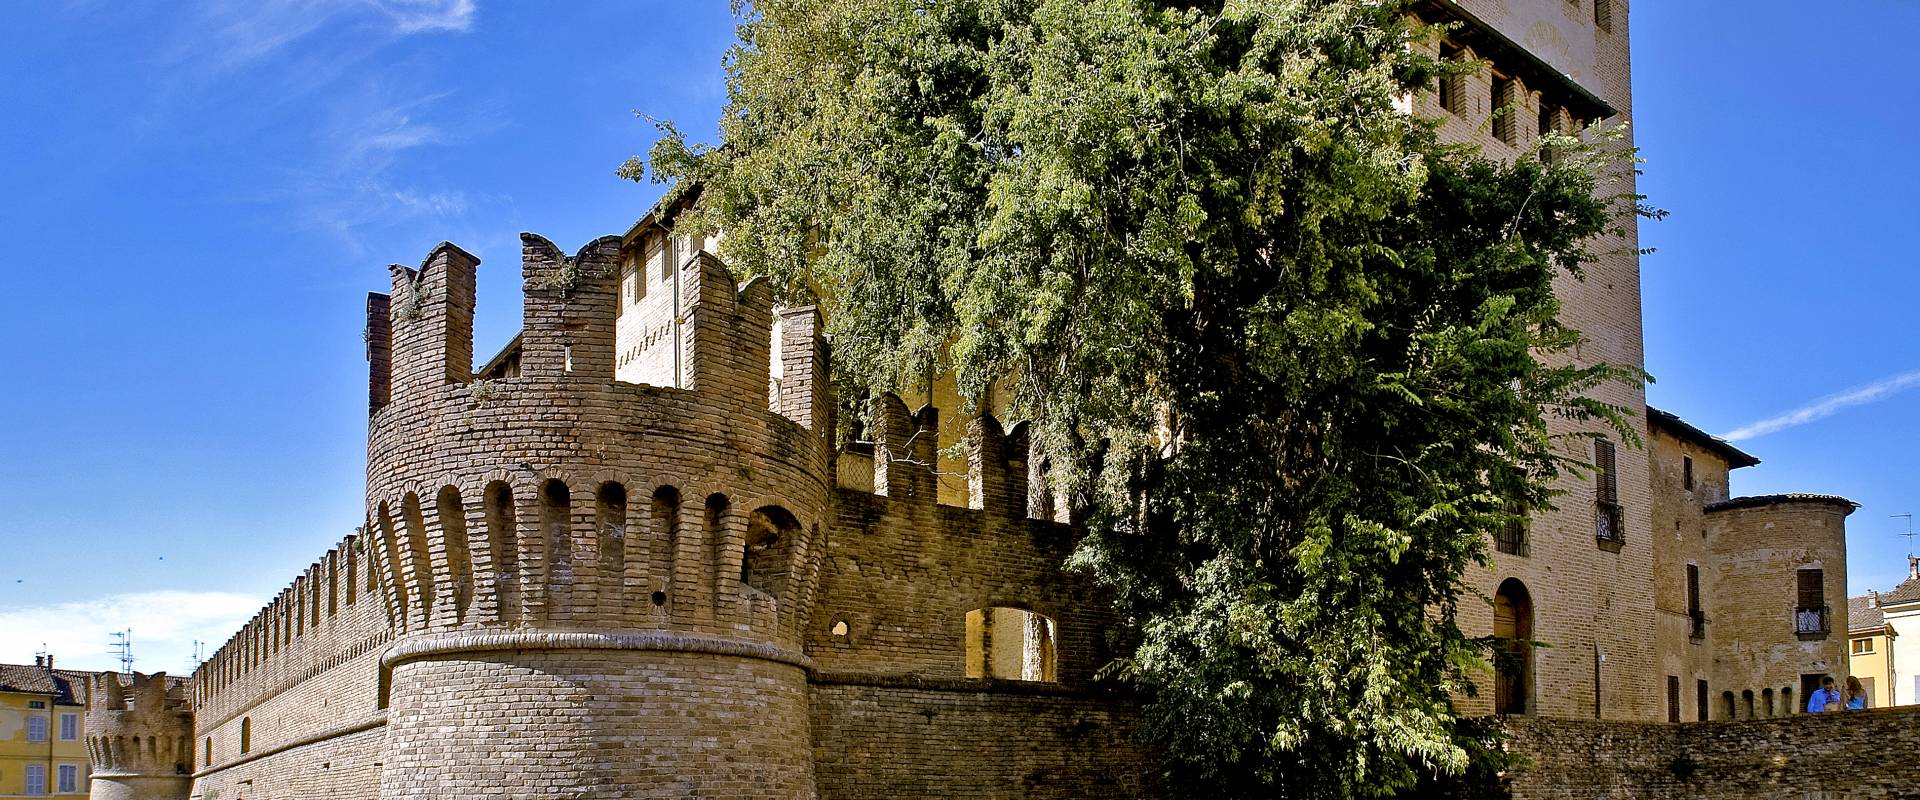 Ingresso della Rocca Sanvitale foto di Carlo grifone